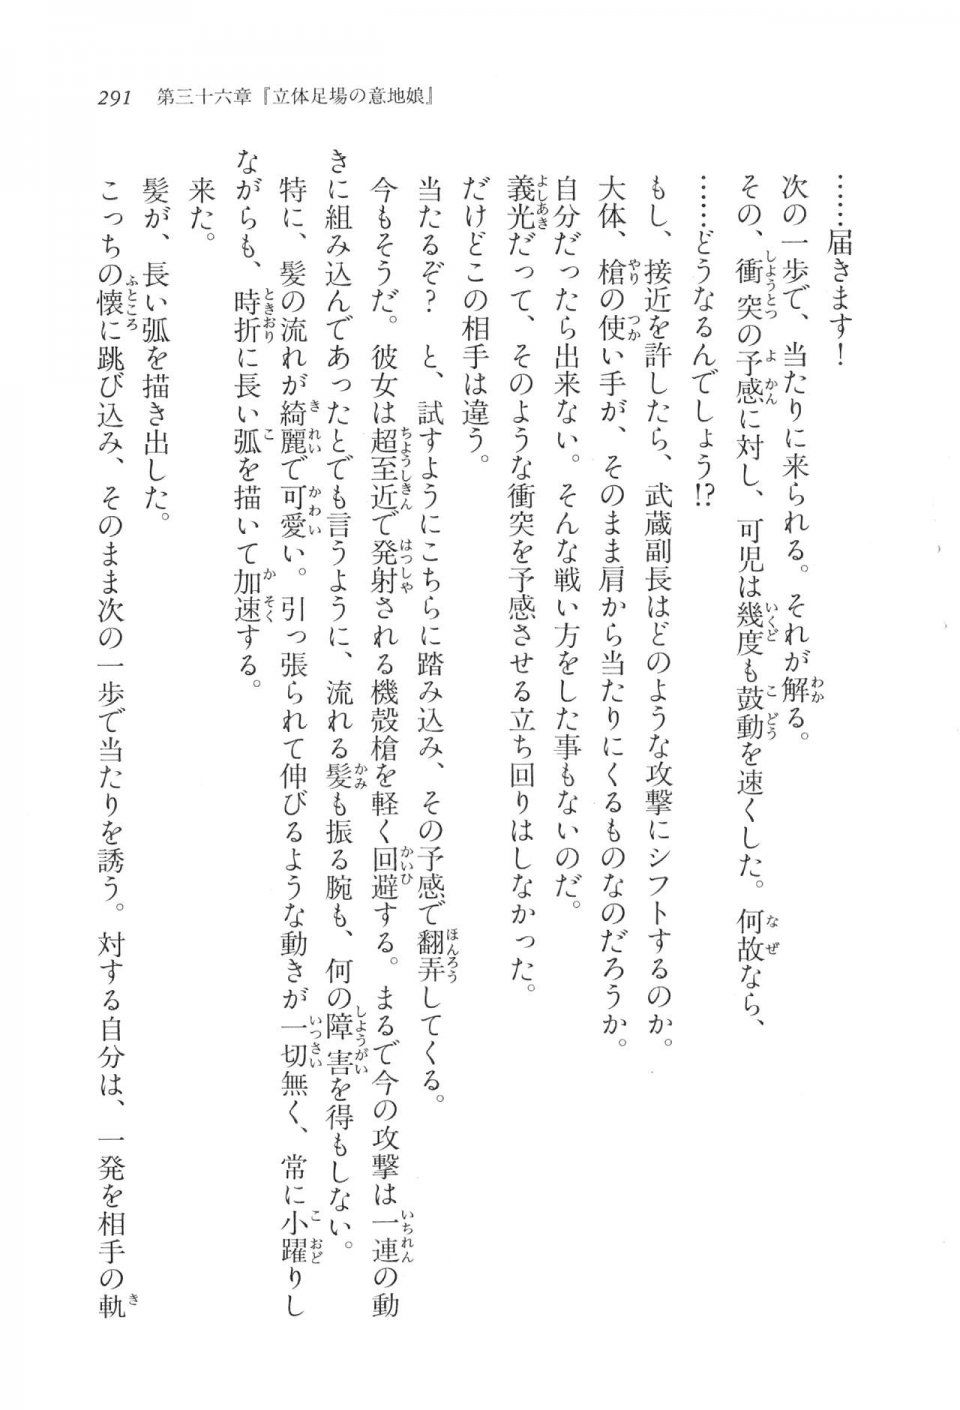 Kyoukai Senjou no Horizon LN Vol 17(7B) - Photo #291